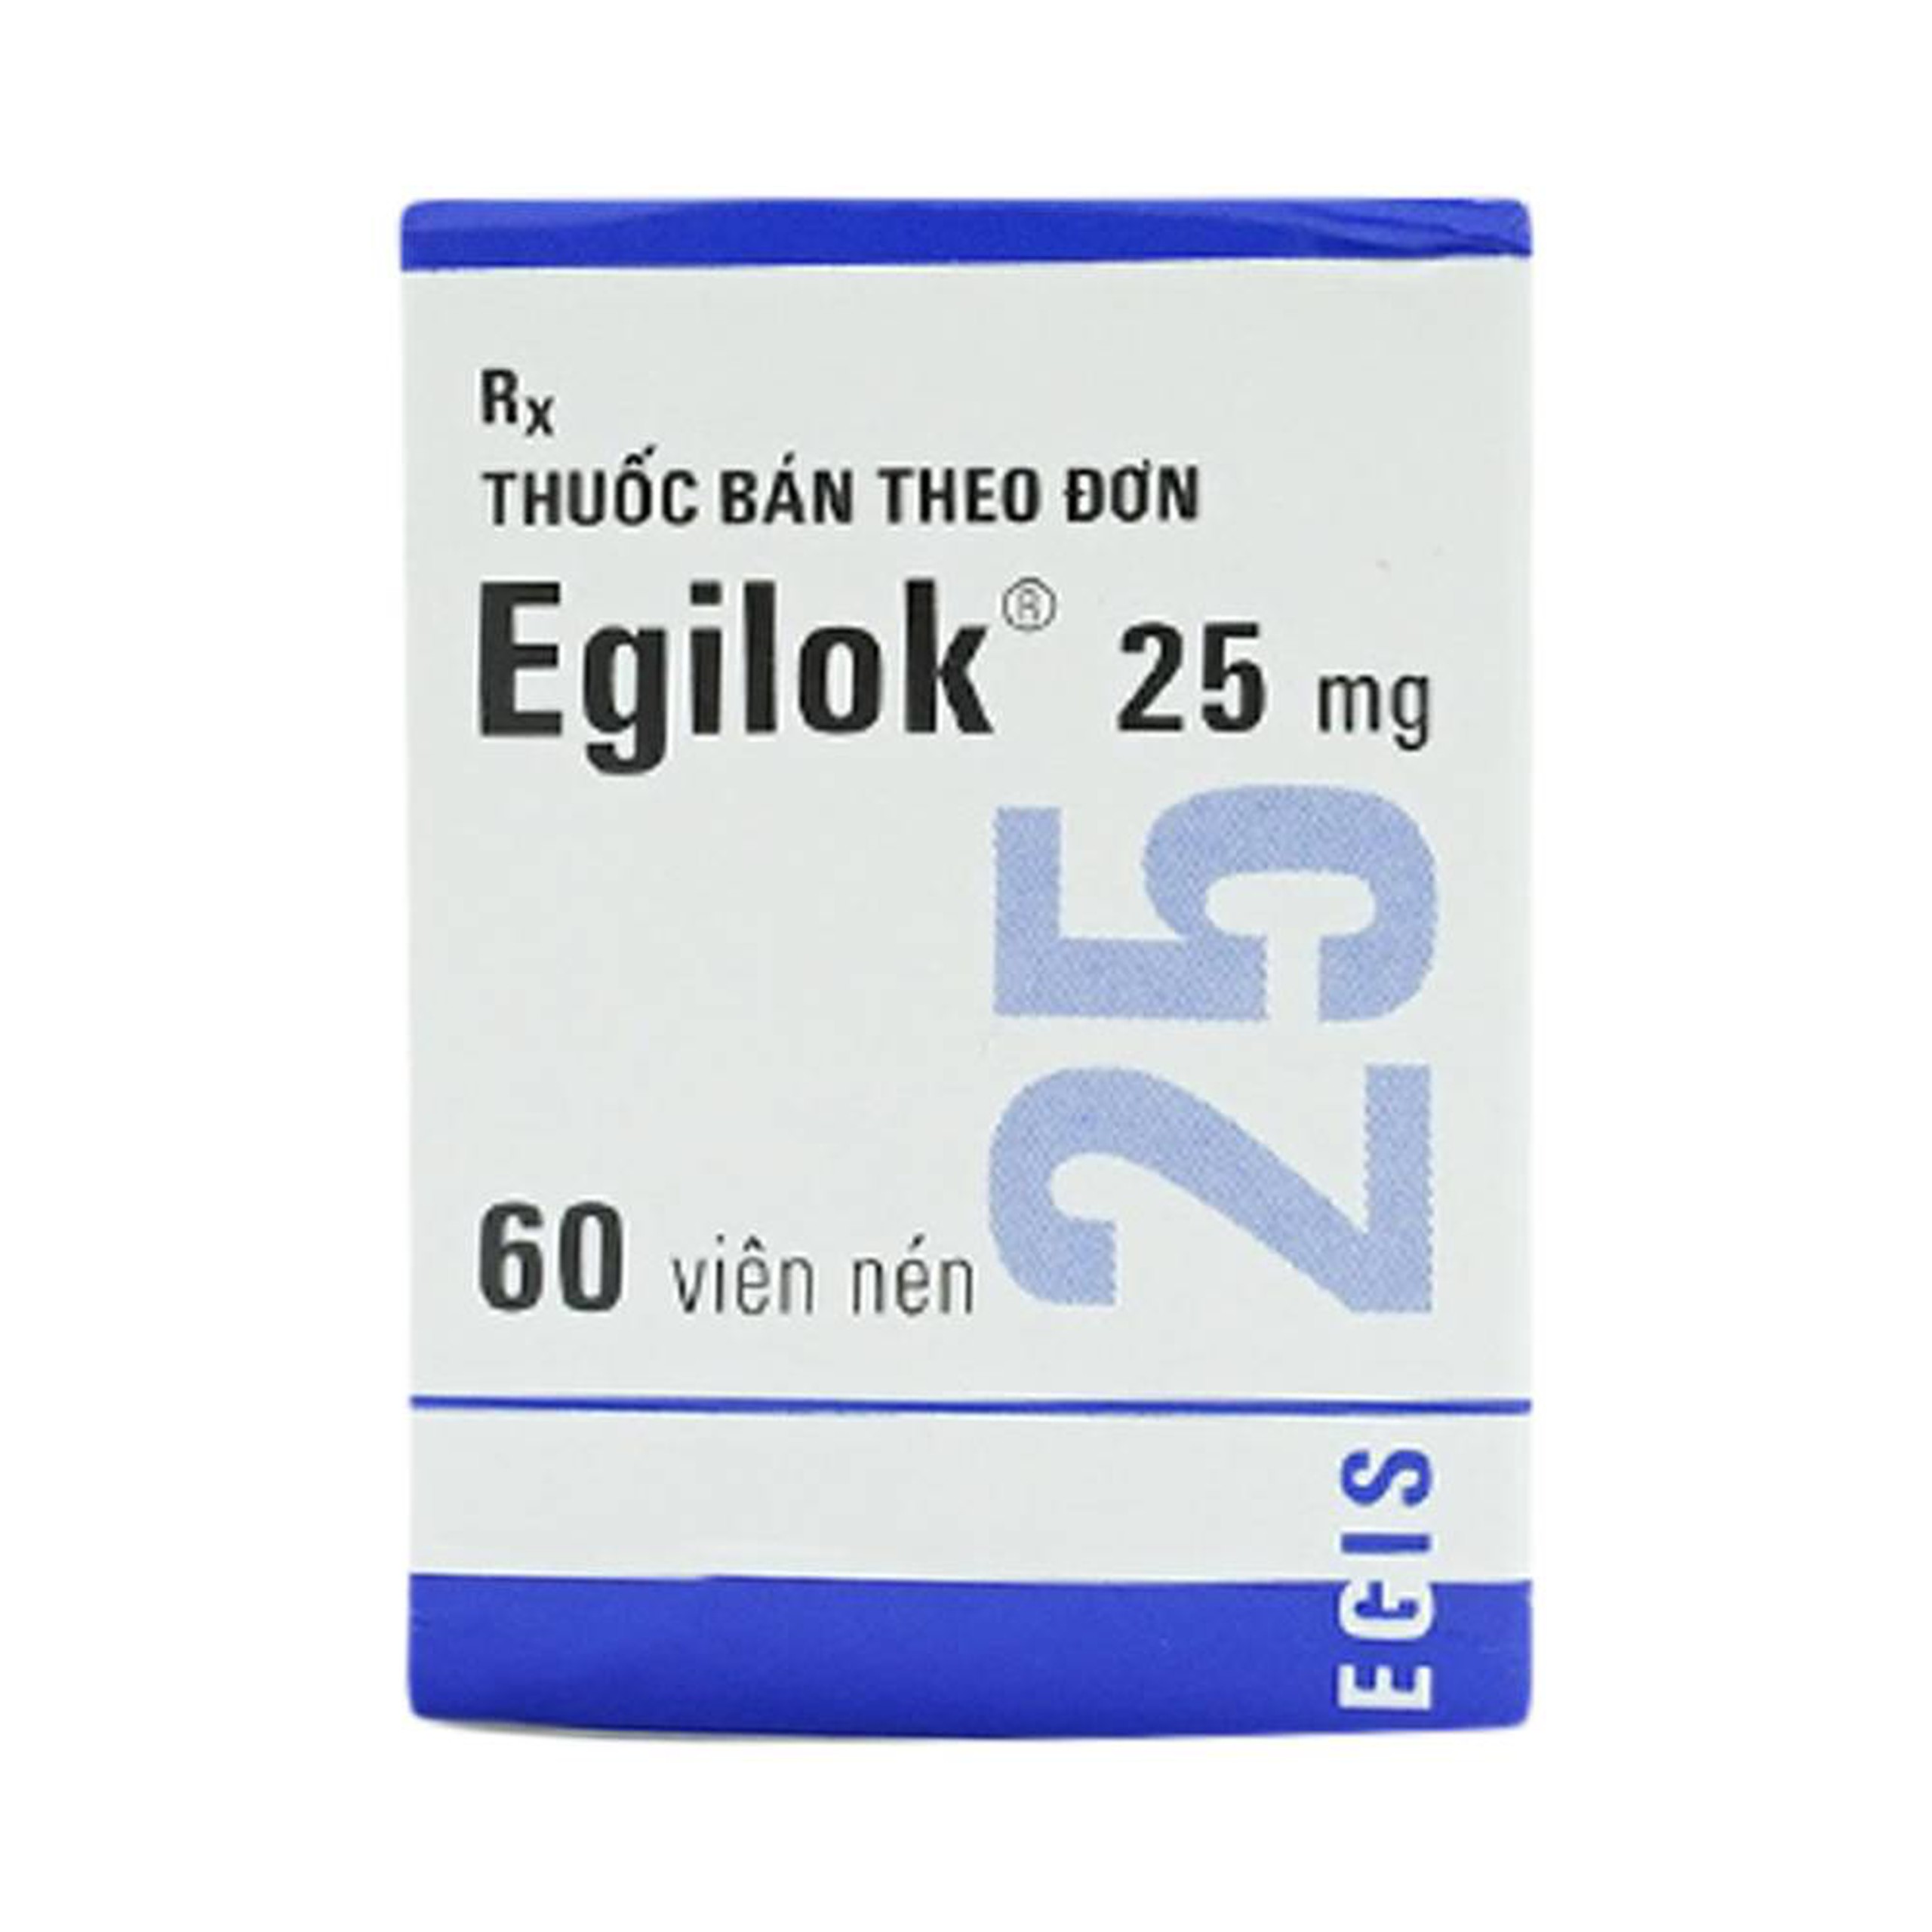 Thuốc Egilok 25mg Egis Pharma điều trị tăng huyết áp, đau thắt ngực (60 viên)